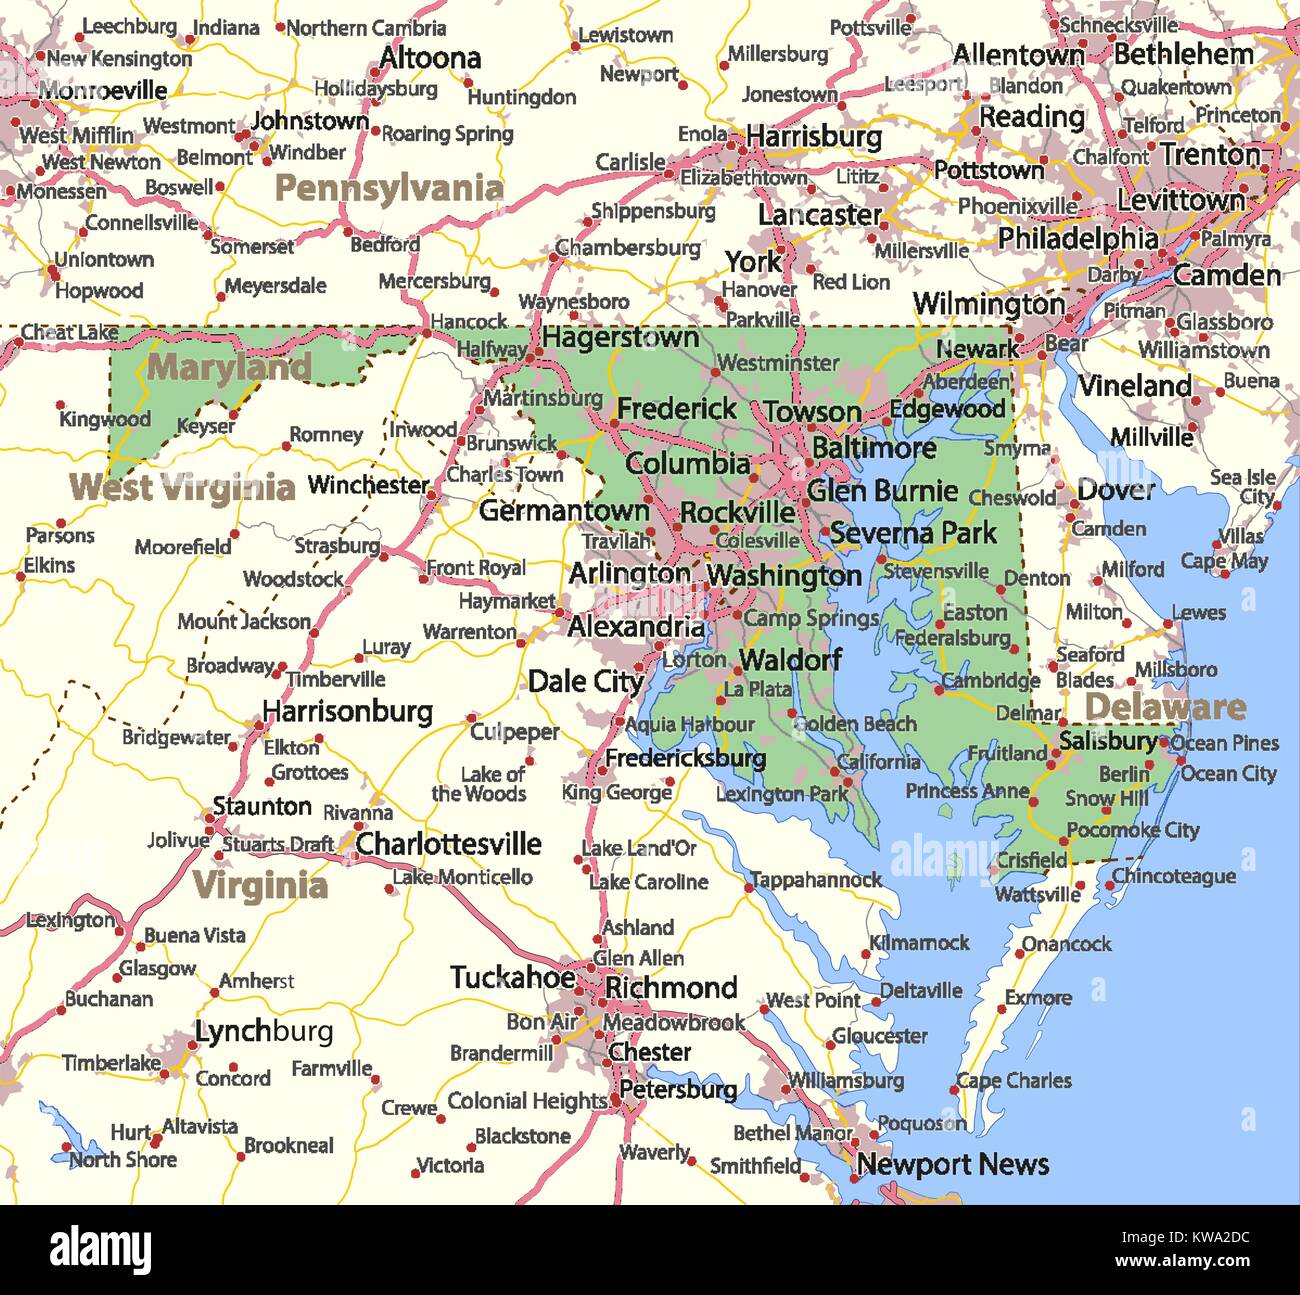 Mappa di Maryland. Mostra i confini, zone urbane, nomi di località, strade e autostrade. Proiezione: proiezione di Mercatore. Illustrazione Vettoriale